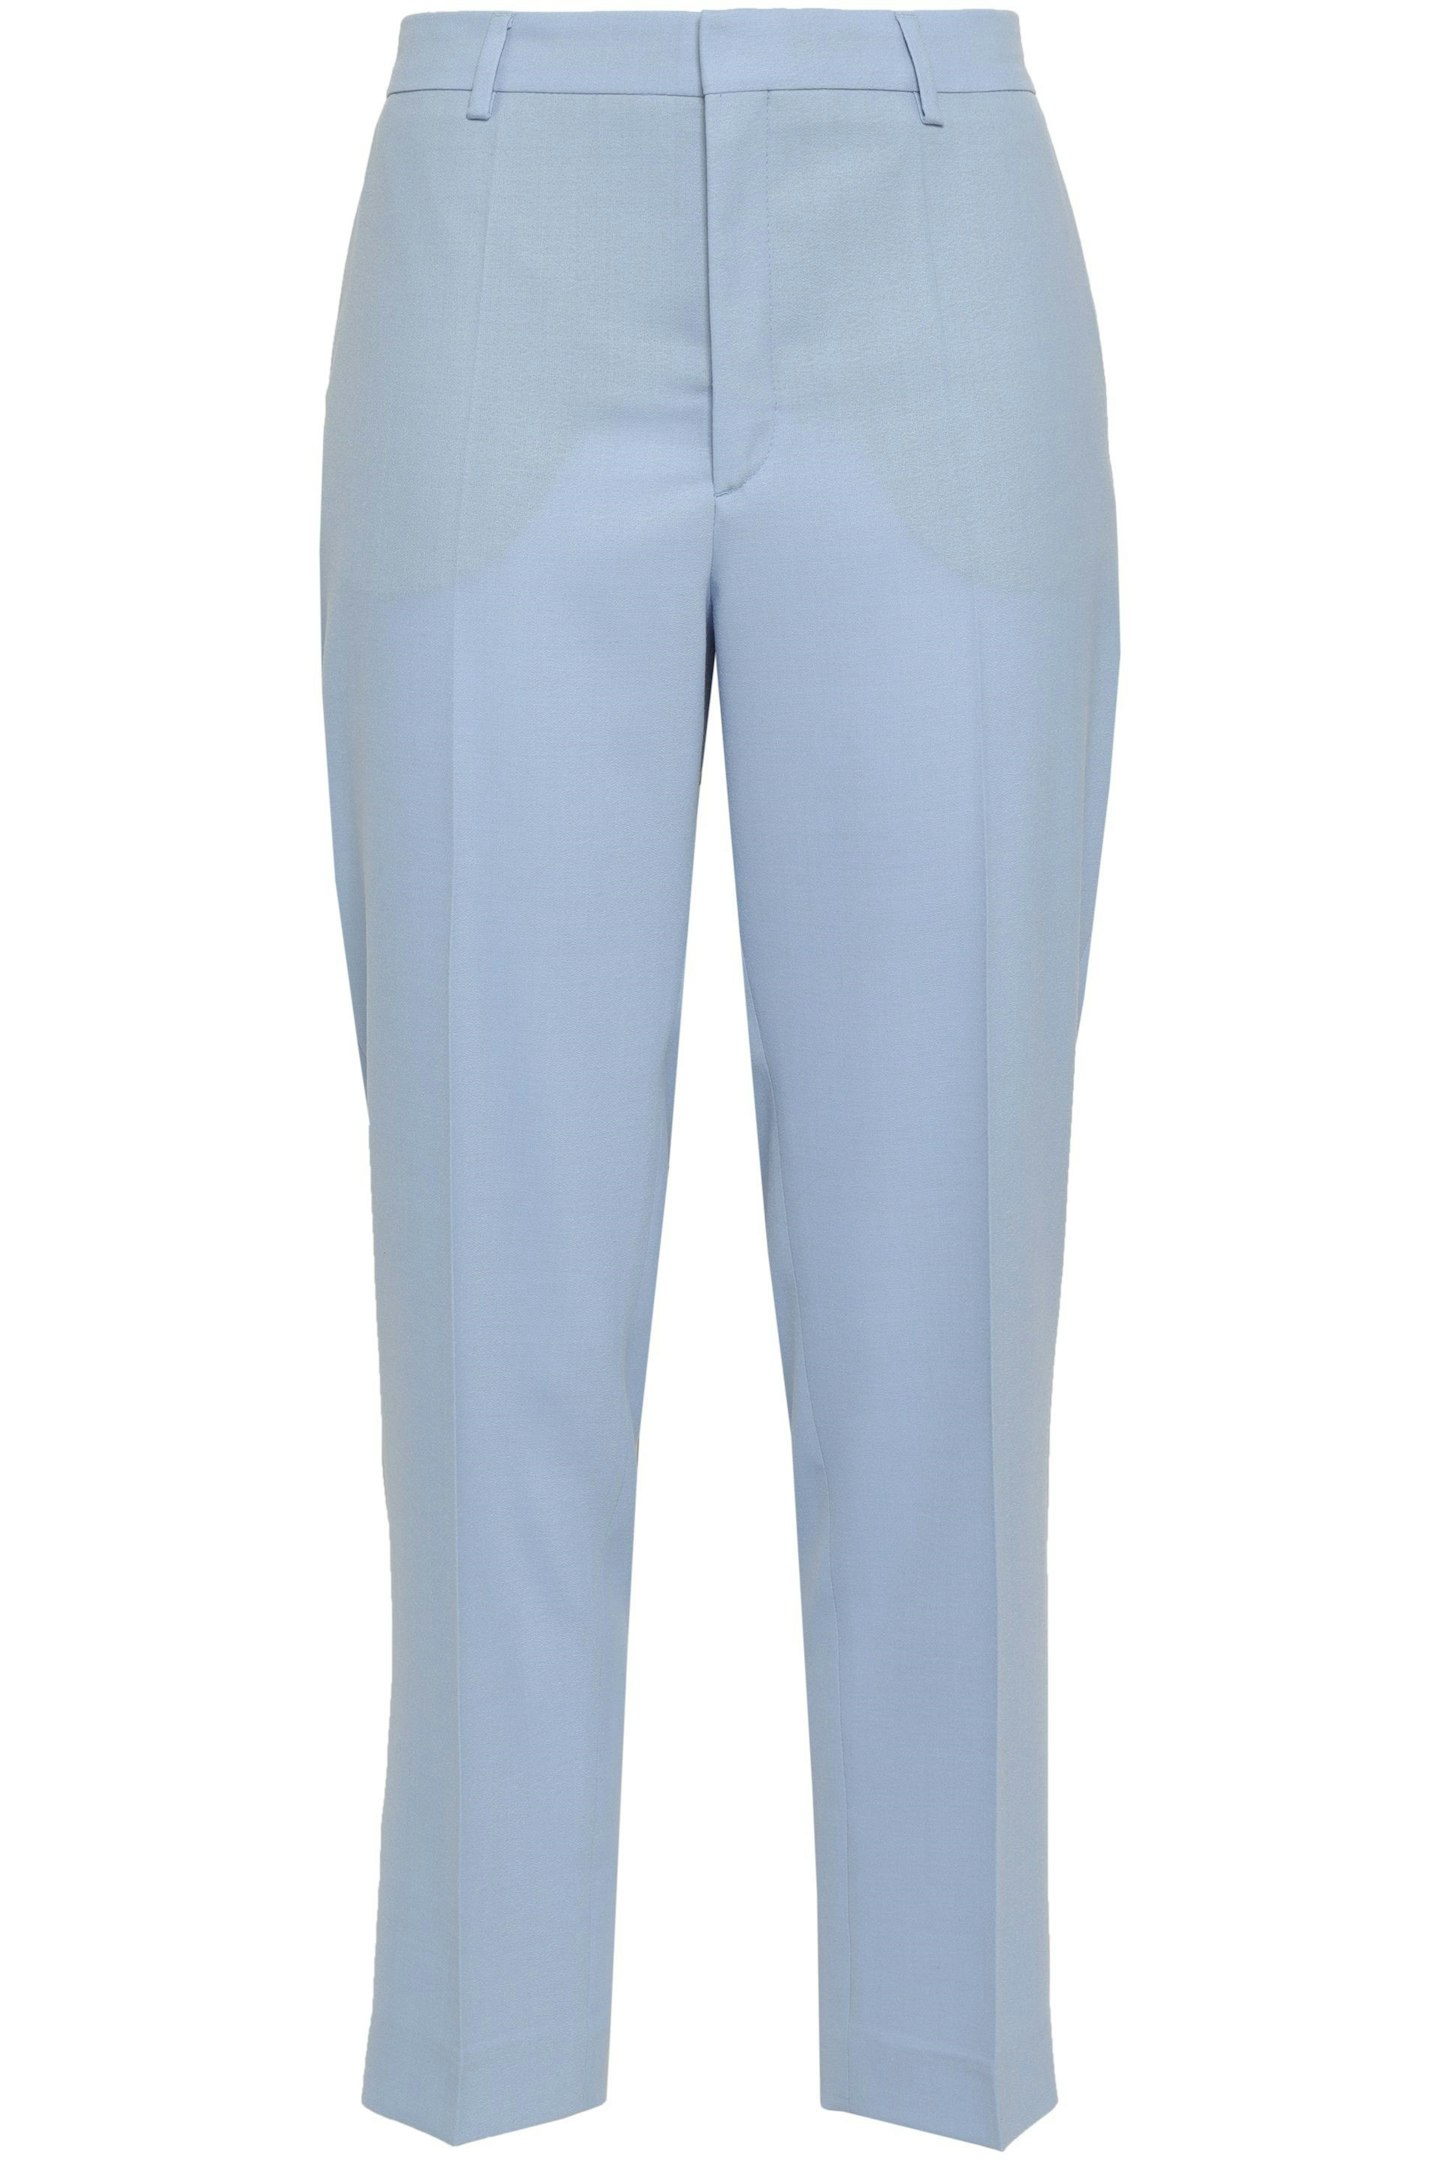 Filippa K, Suit Trousers, £90